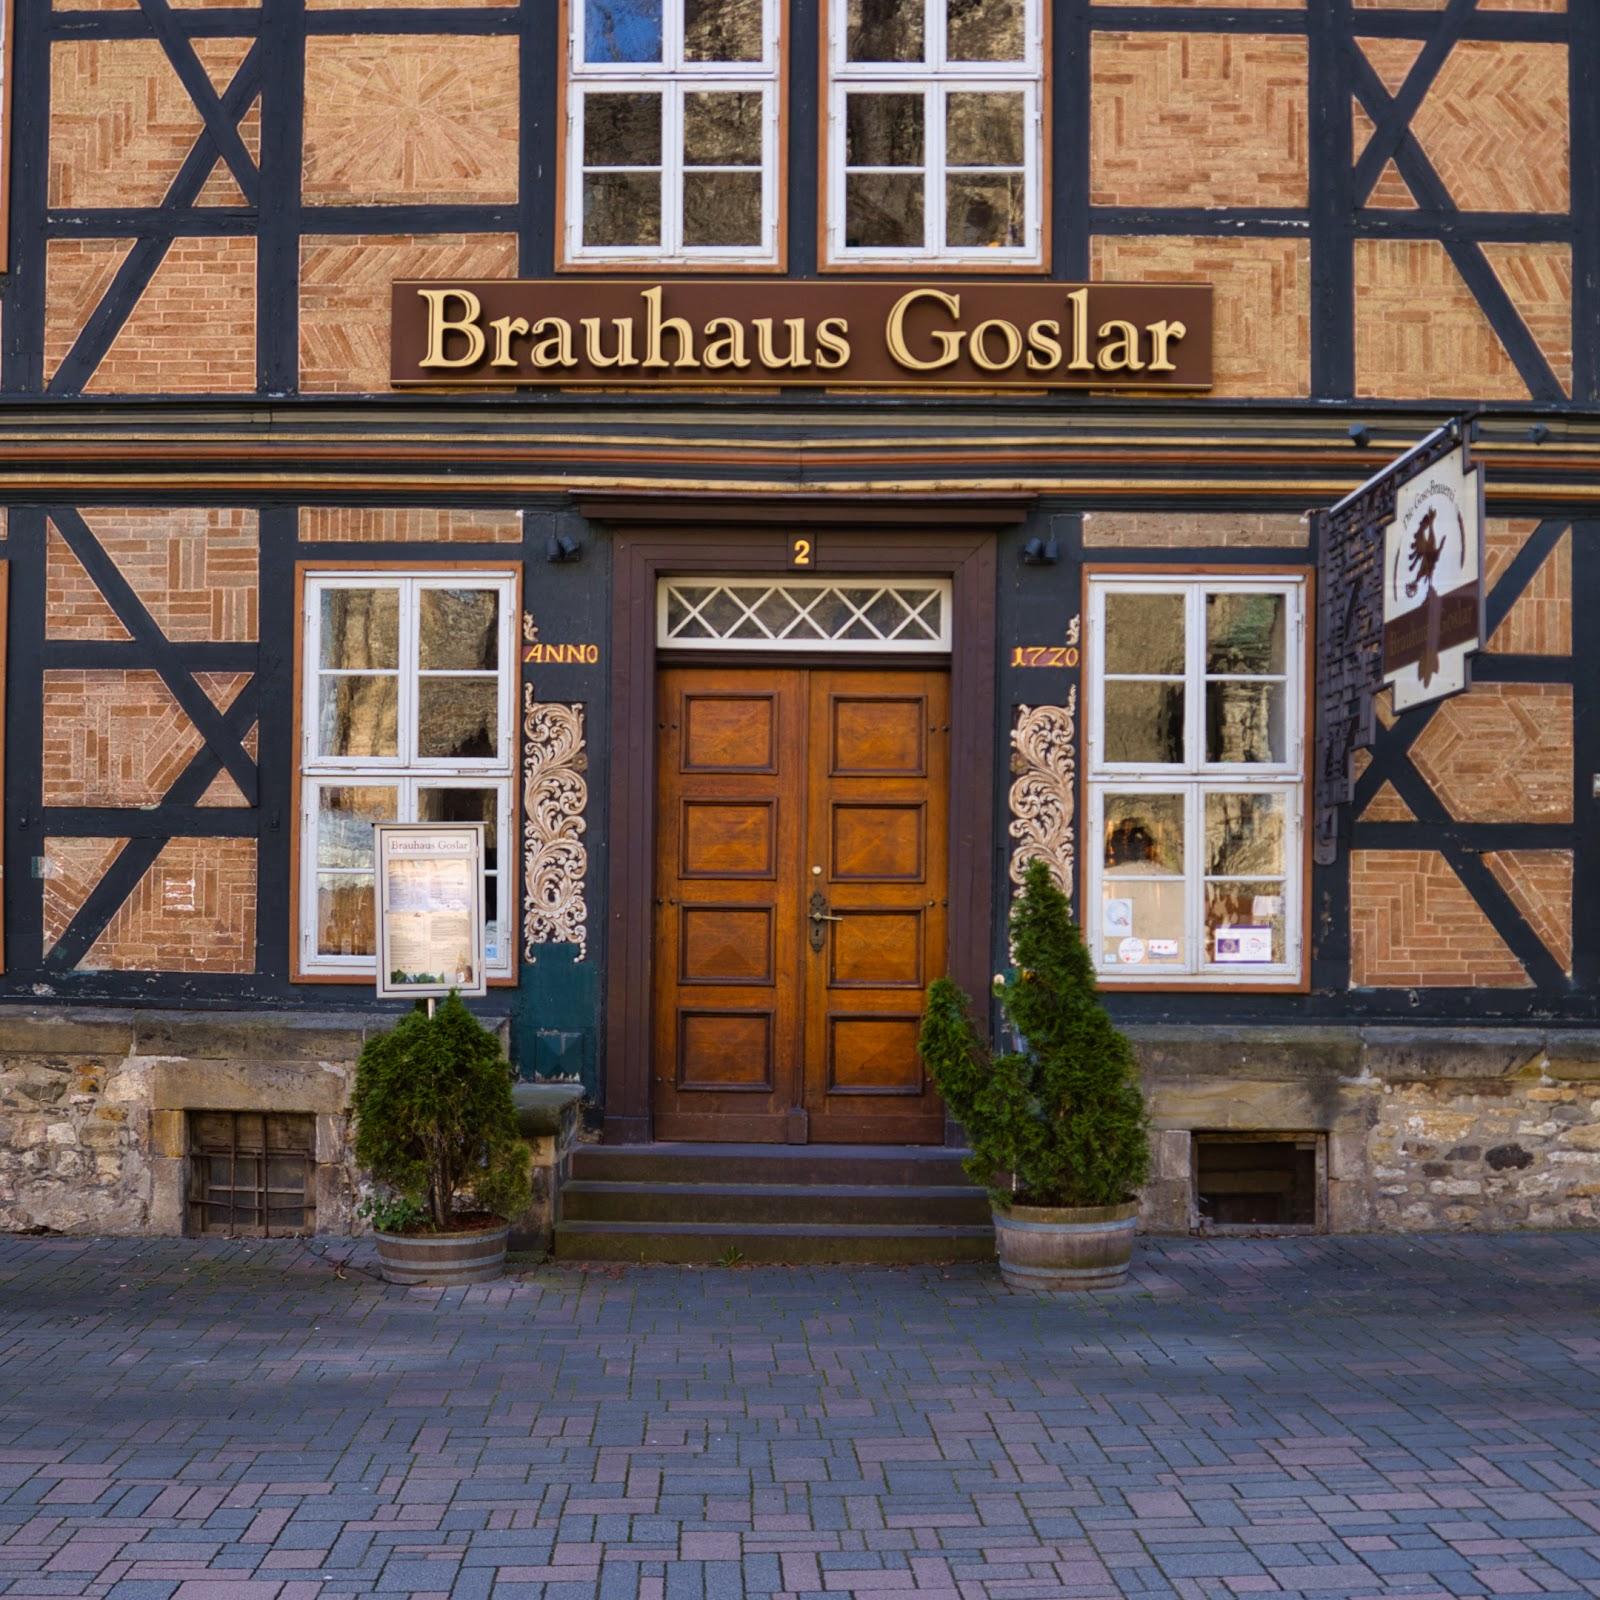 Restaurant "Brauhaus" in  Goslar